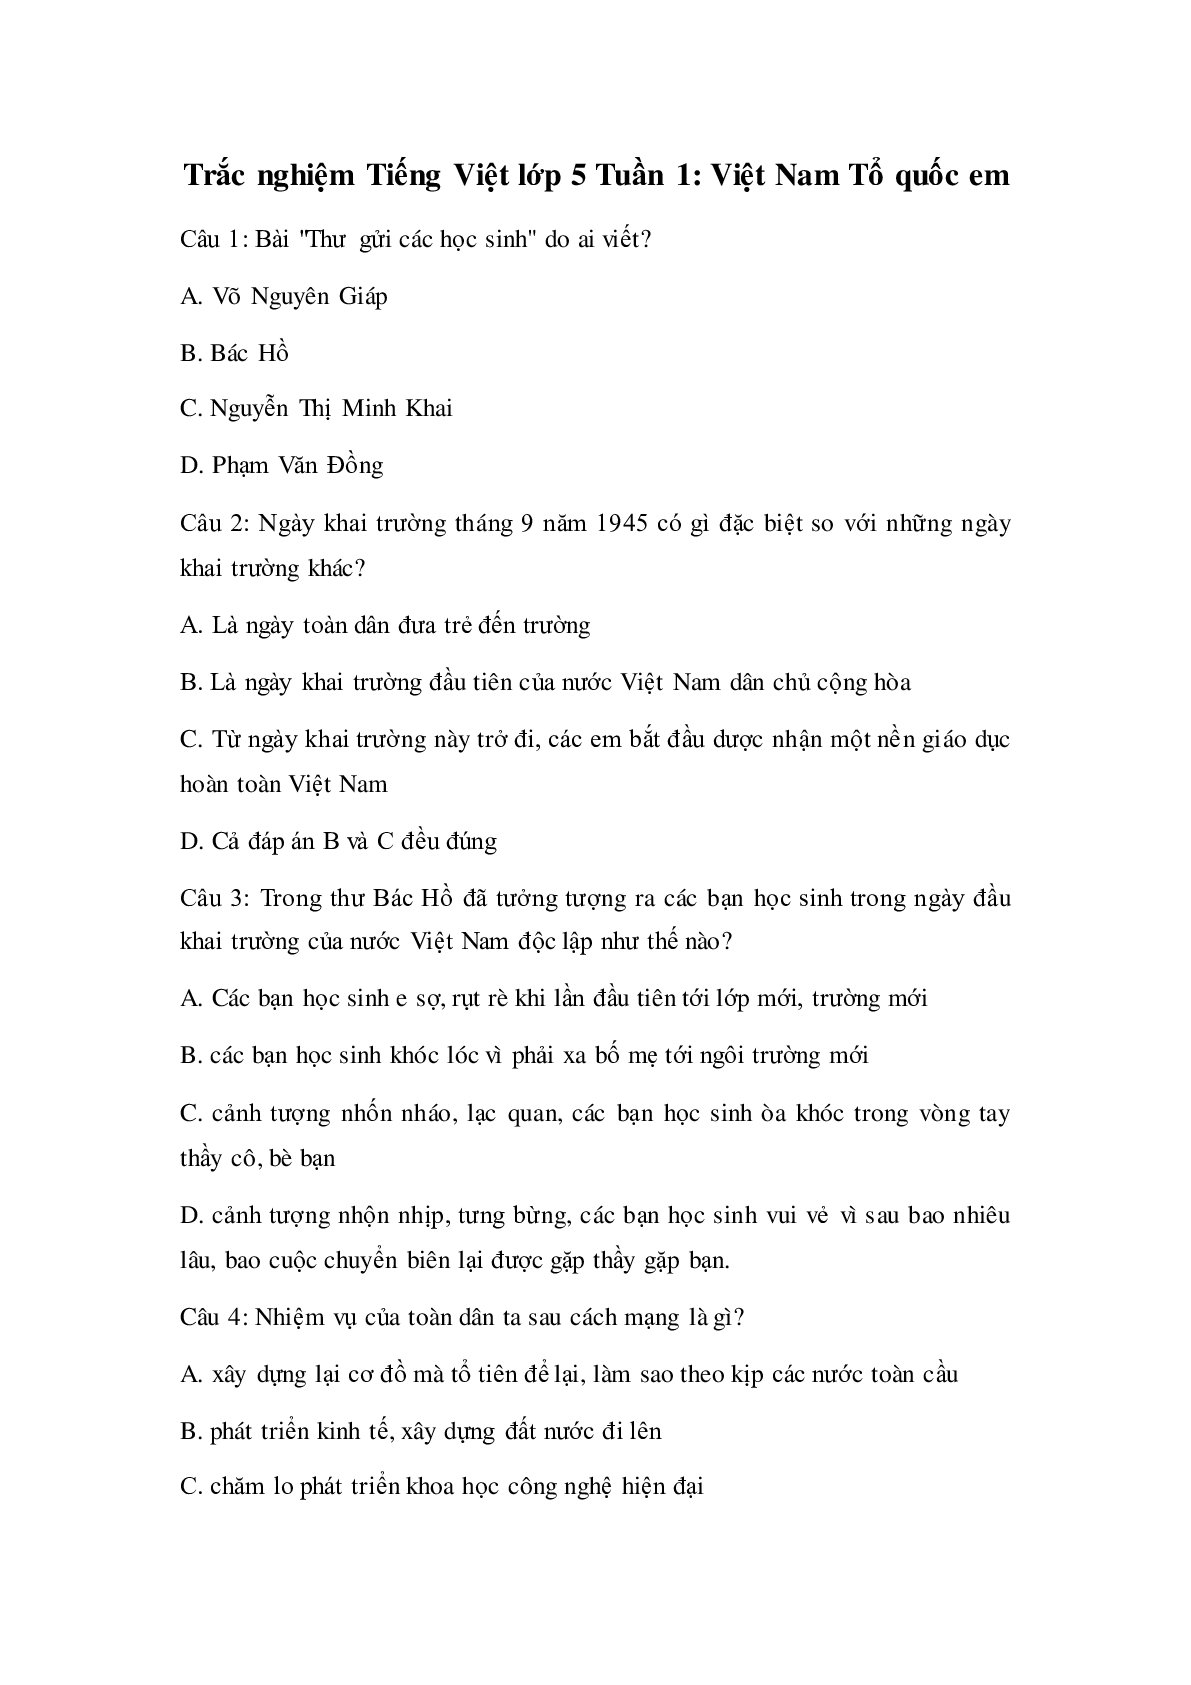 Trắc nghiệm Tiếng Việt lớp 5 Tuần 1 có đáp án (trang 1)